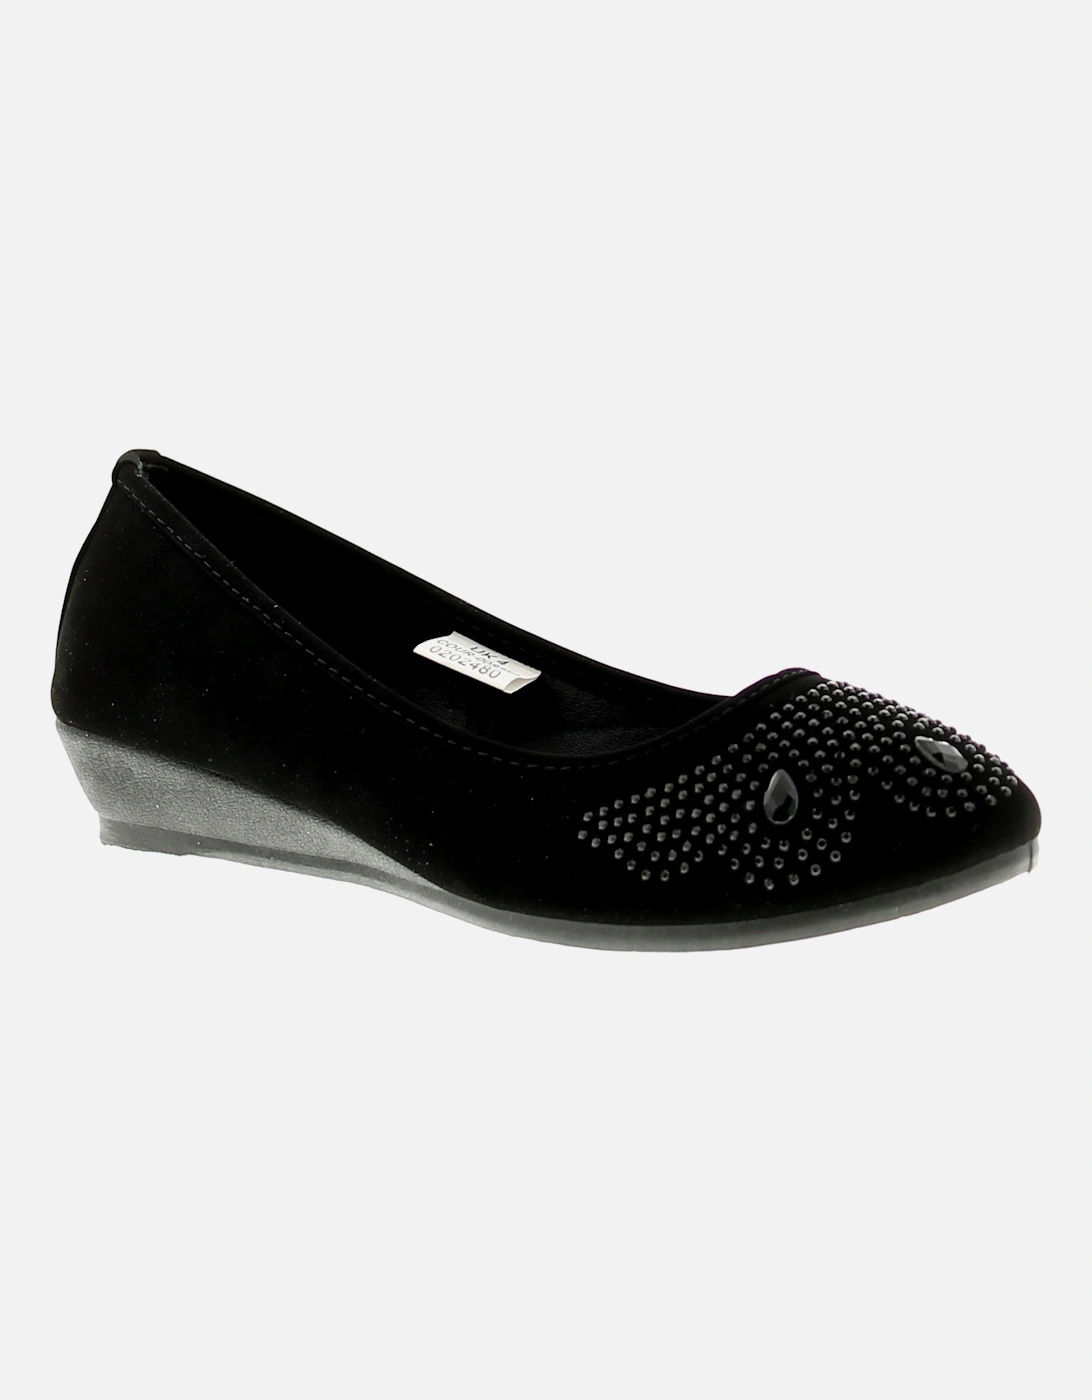 Womens Shoes Wedges Diamante Tasha 2 Slip On black UK Size, 6 of 5